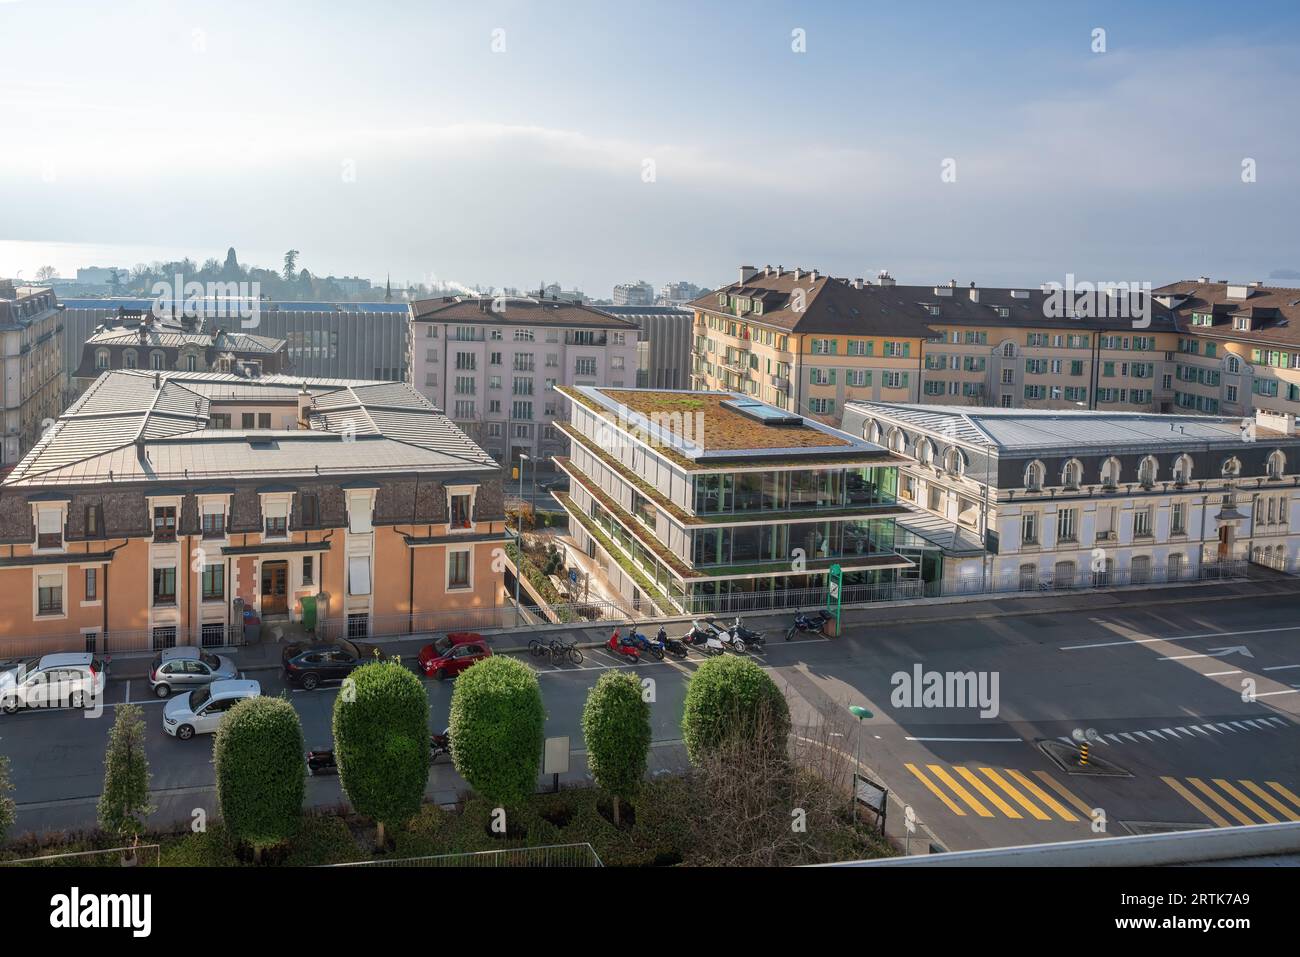 Vue aérienne de la rue chemin de Mornex - Lausanne, Suisse Banque D'Images